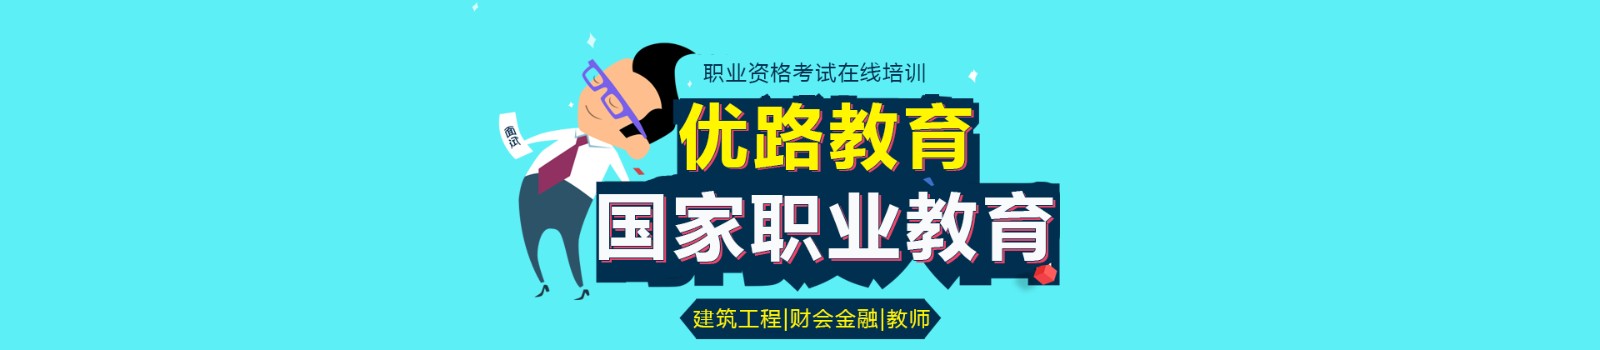 忻州优路教育 横幅广告